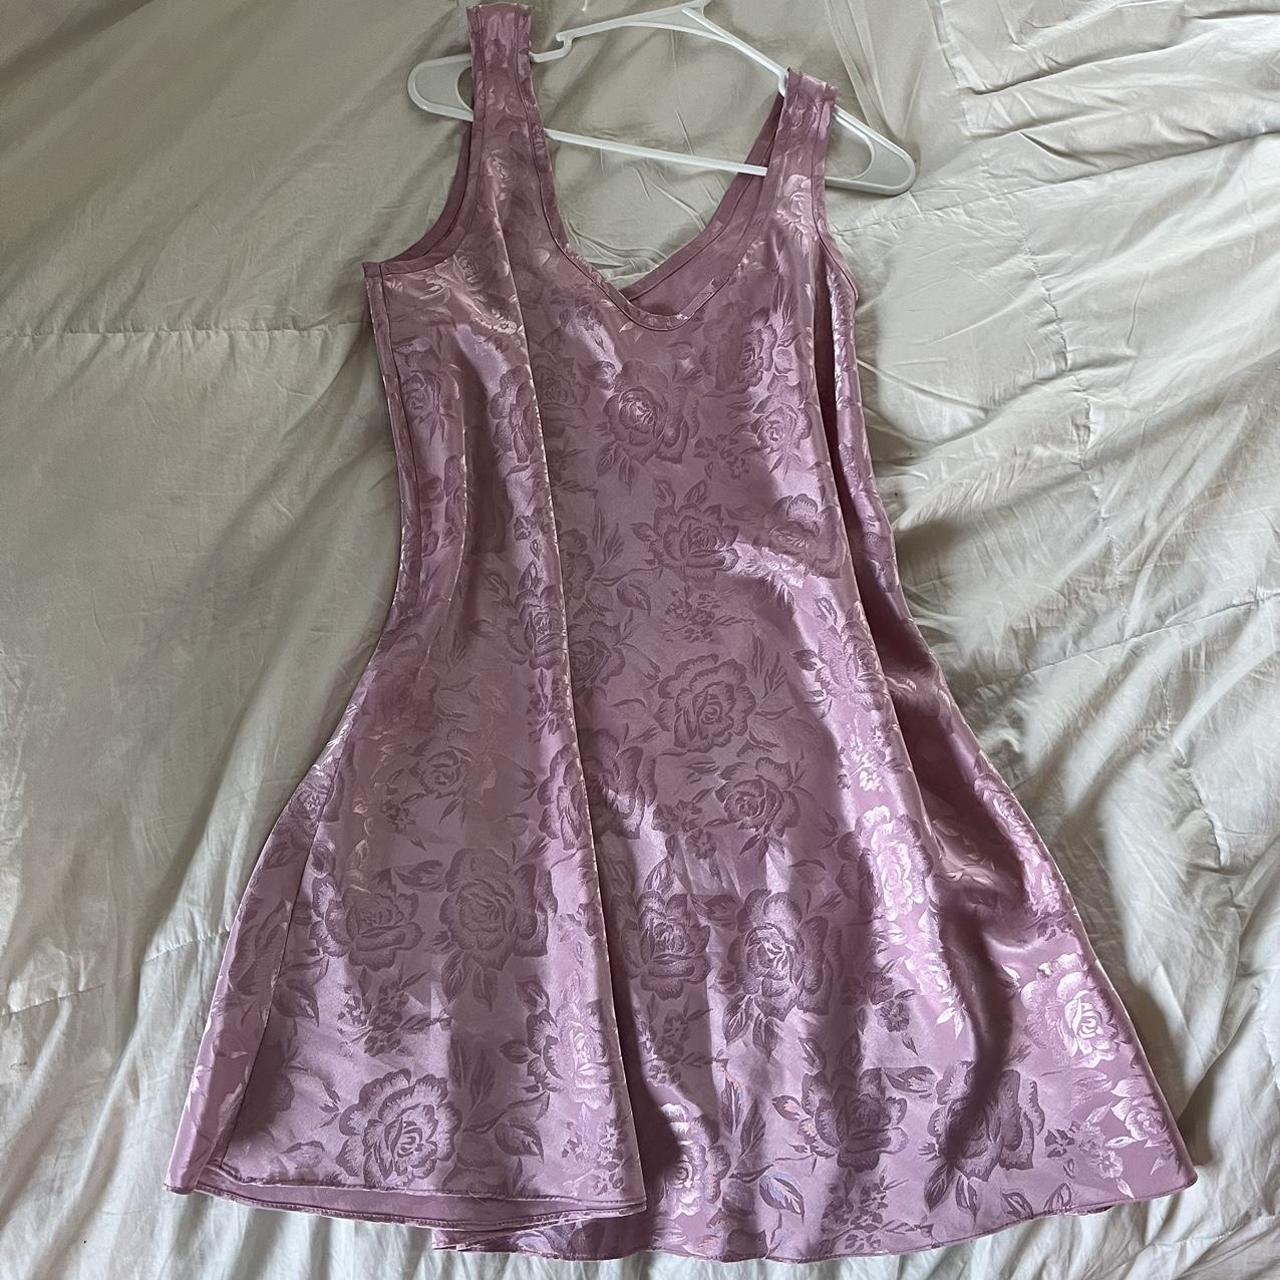 large pink slip dress with shiny ross design - Depop